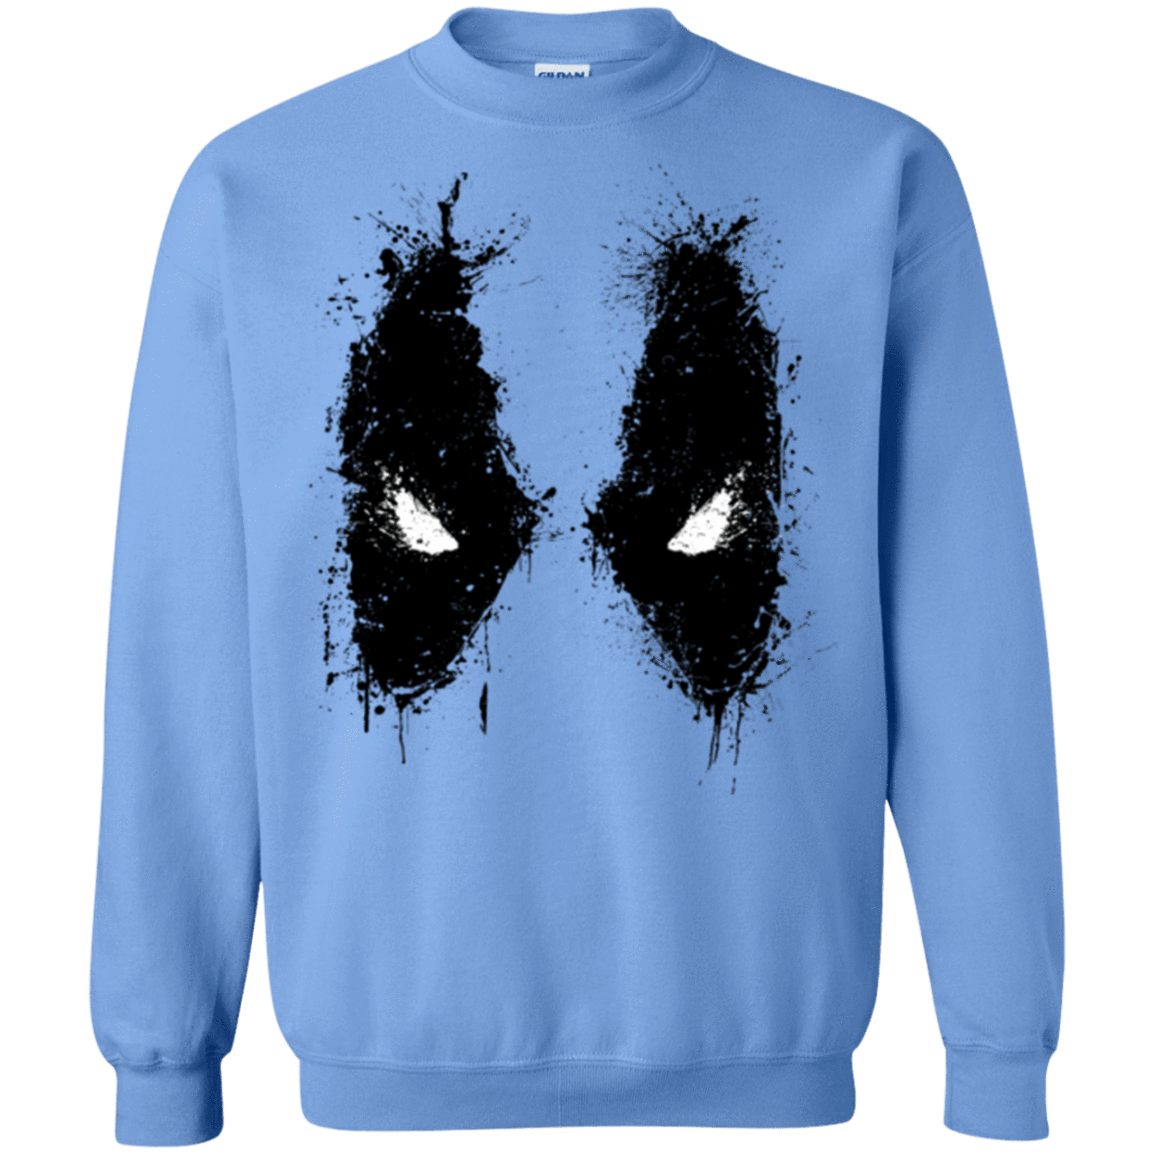 Sweatshirts Carolina Blue / Small Ink Badass Crewneck Sweatshirt